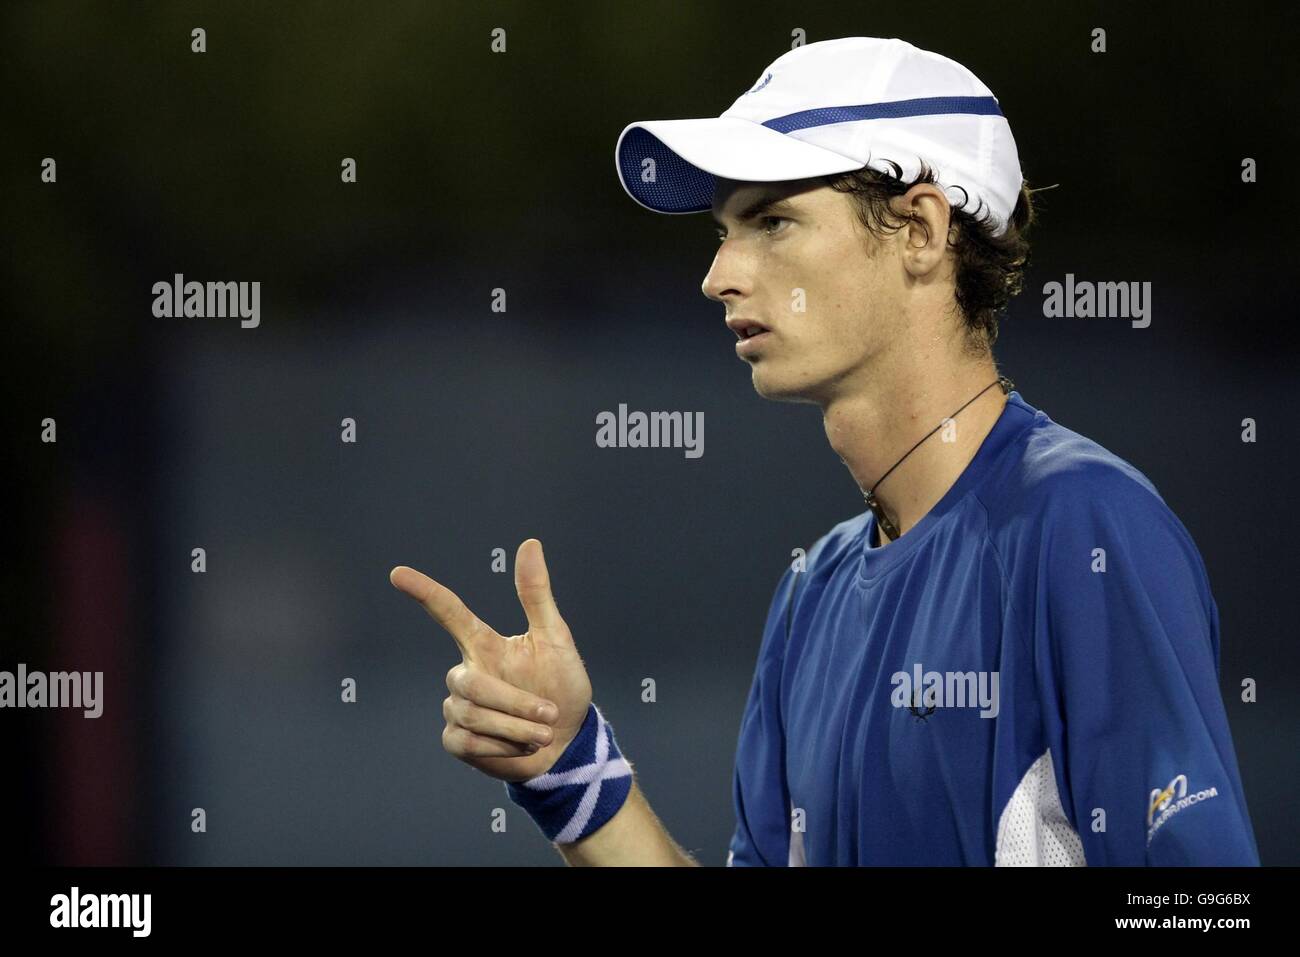 Der britische Andy Murray feiert den Sieg über den US-Amerikaner Robert Kendrick beim ersten Spiel der US Open in Flushing Meadow, New York. Stockfoto